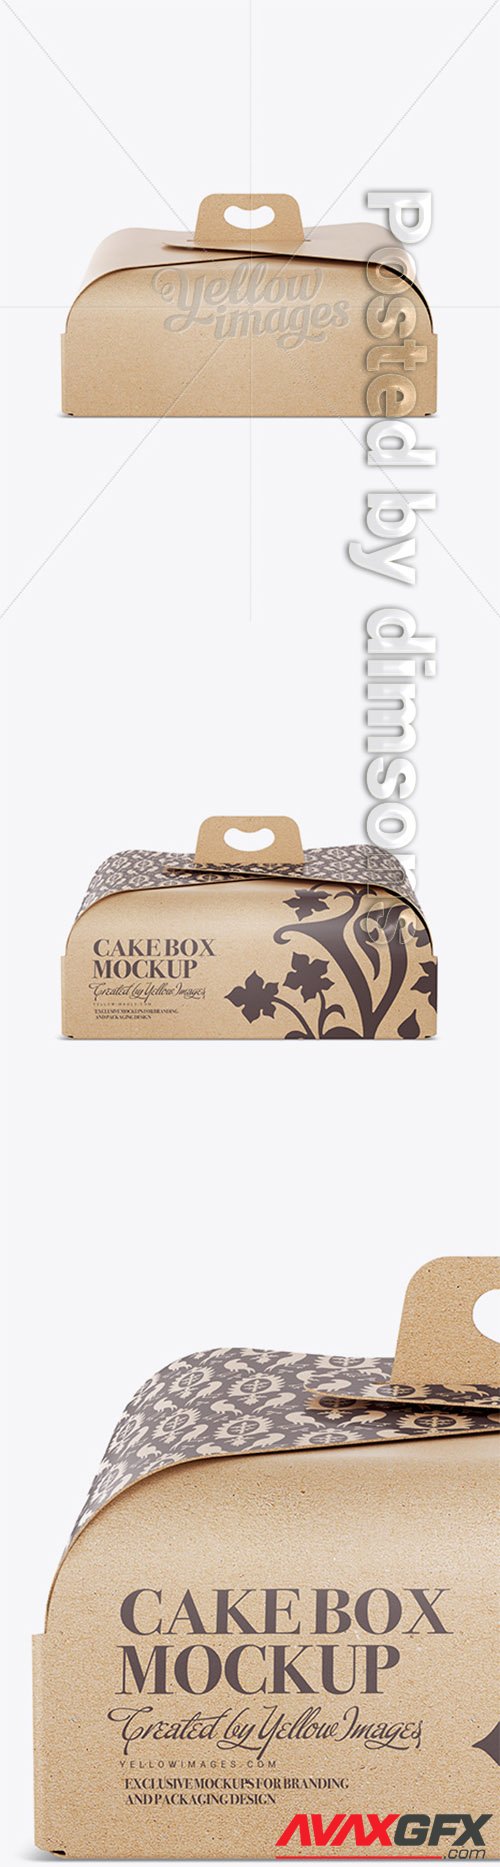 Carton Cake Box Mockup - Front View 14773